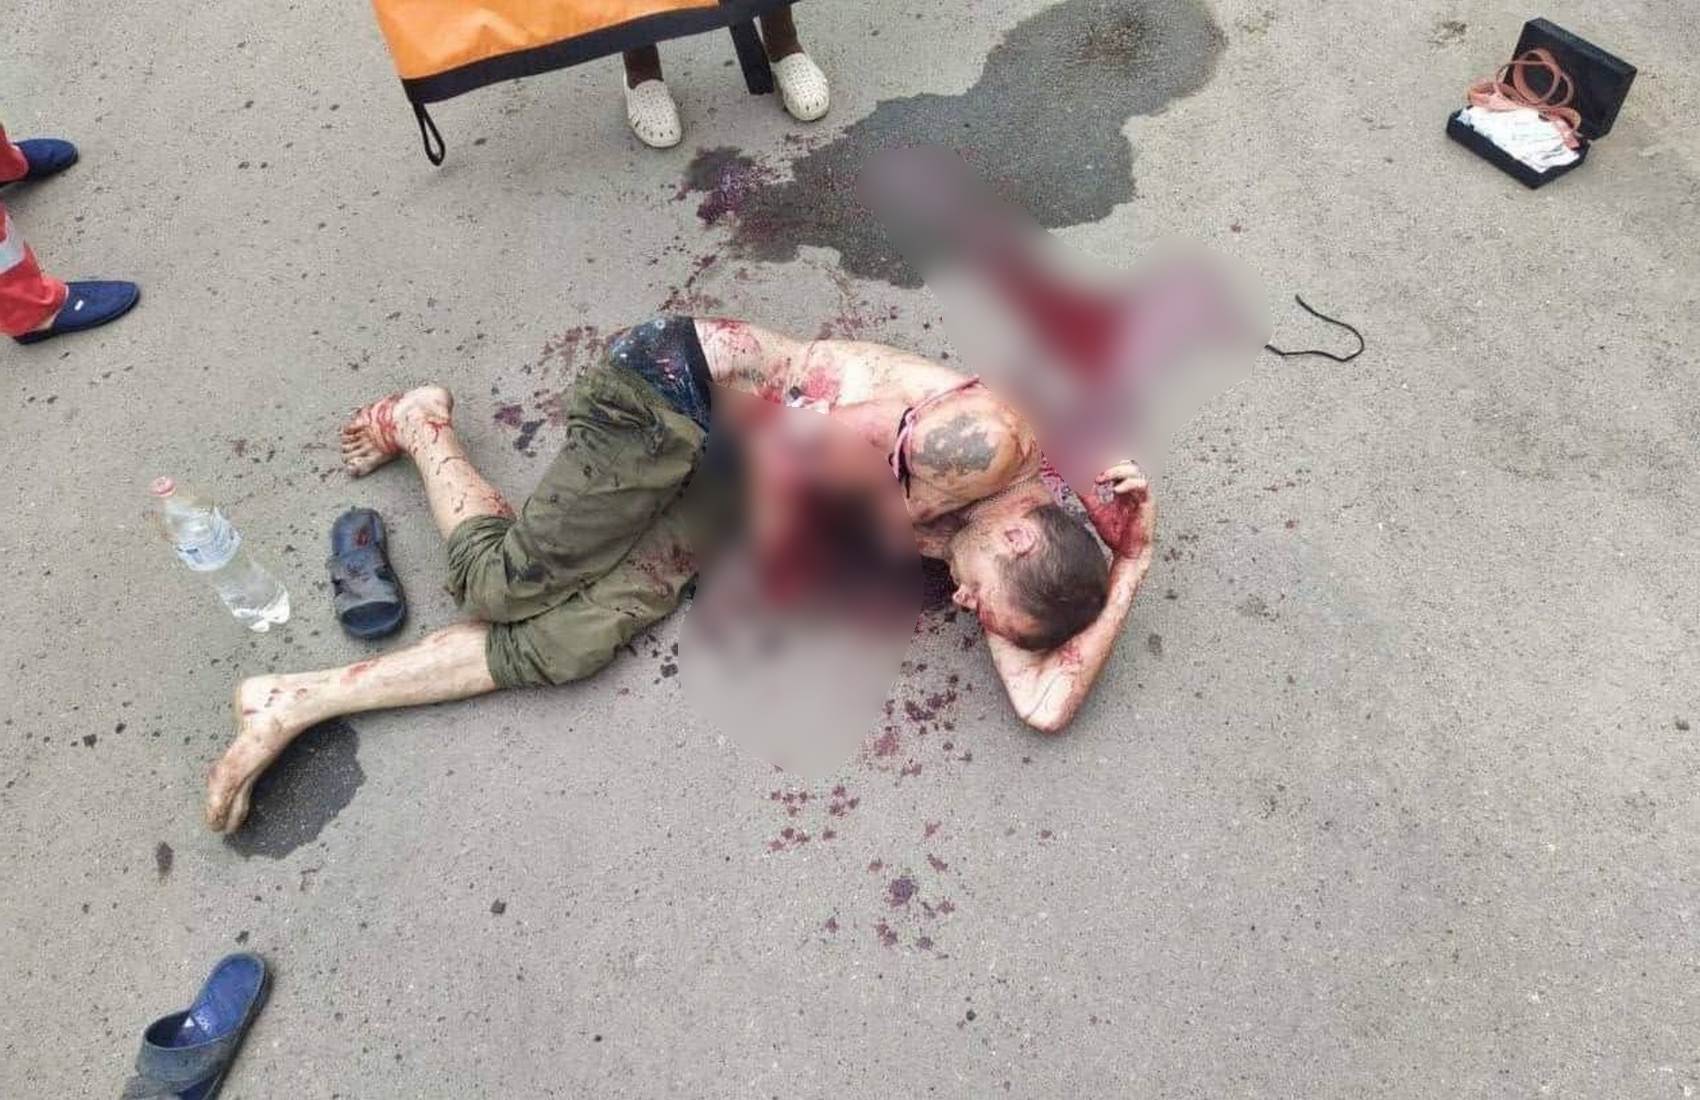 Опубликованы кадры из Молочанска, где мужчина взорвал в руках гранату из-за ссоры с работодателем (видео 18+)